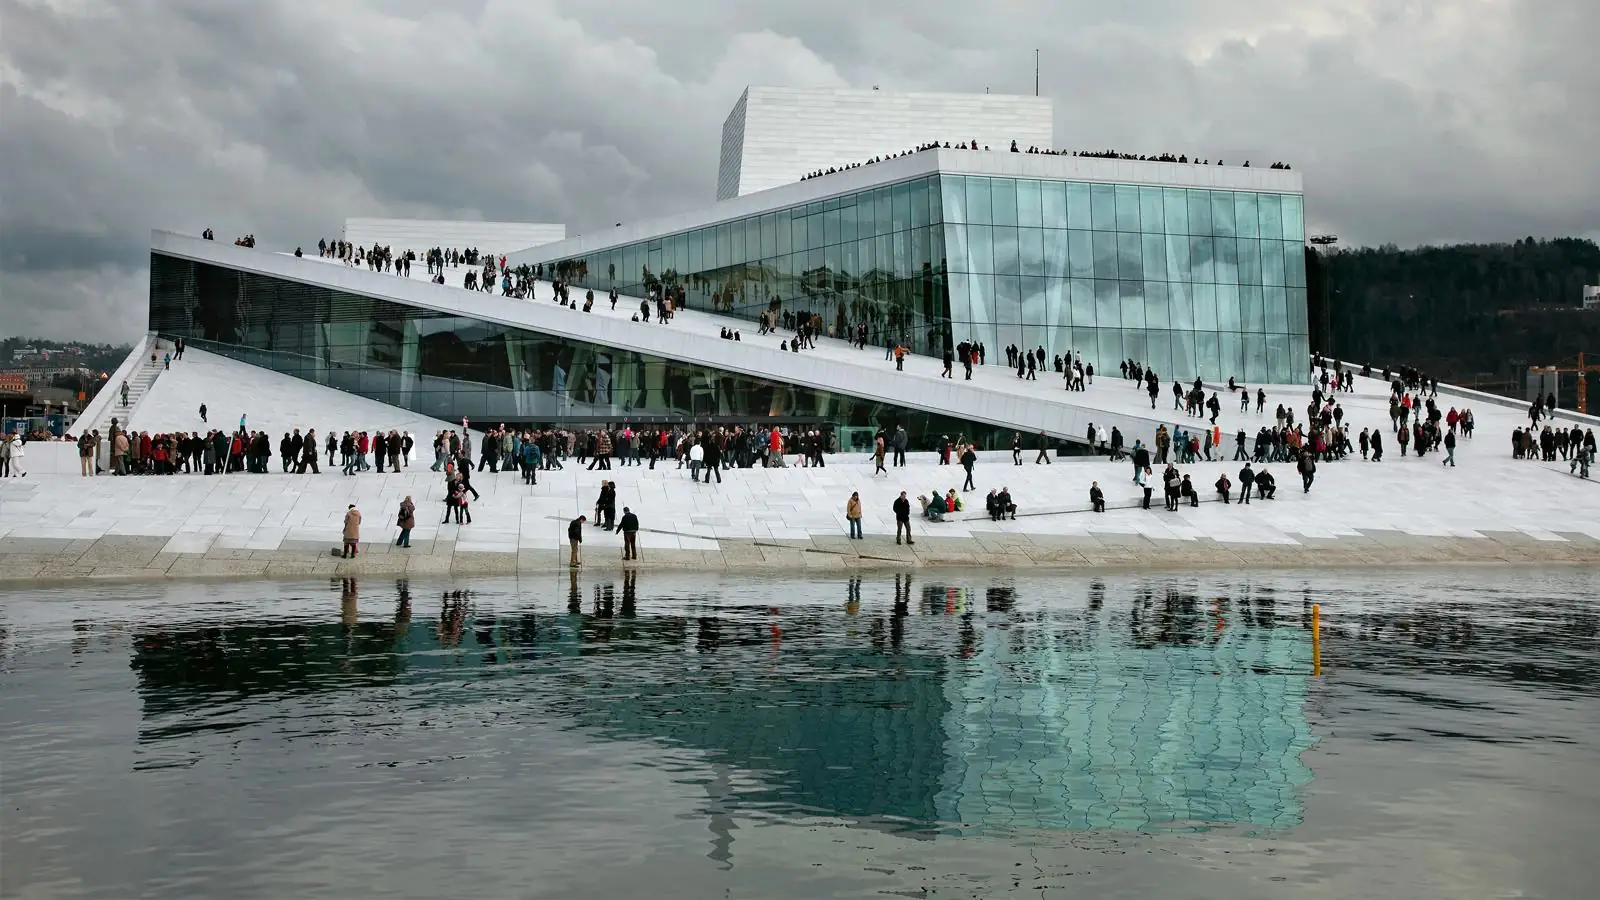 Норвезька національна опера і балет має доступну поверхню для всіх людей. Фото: AV